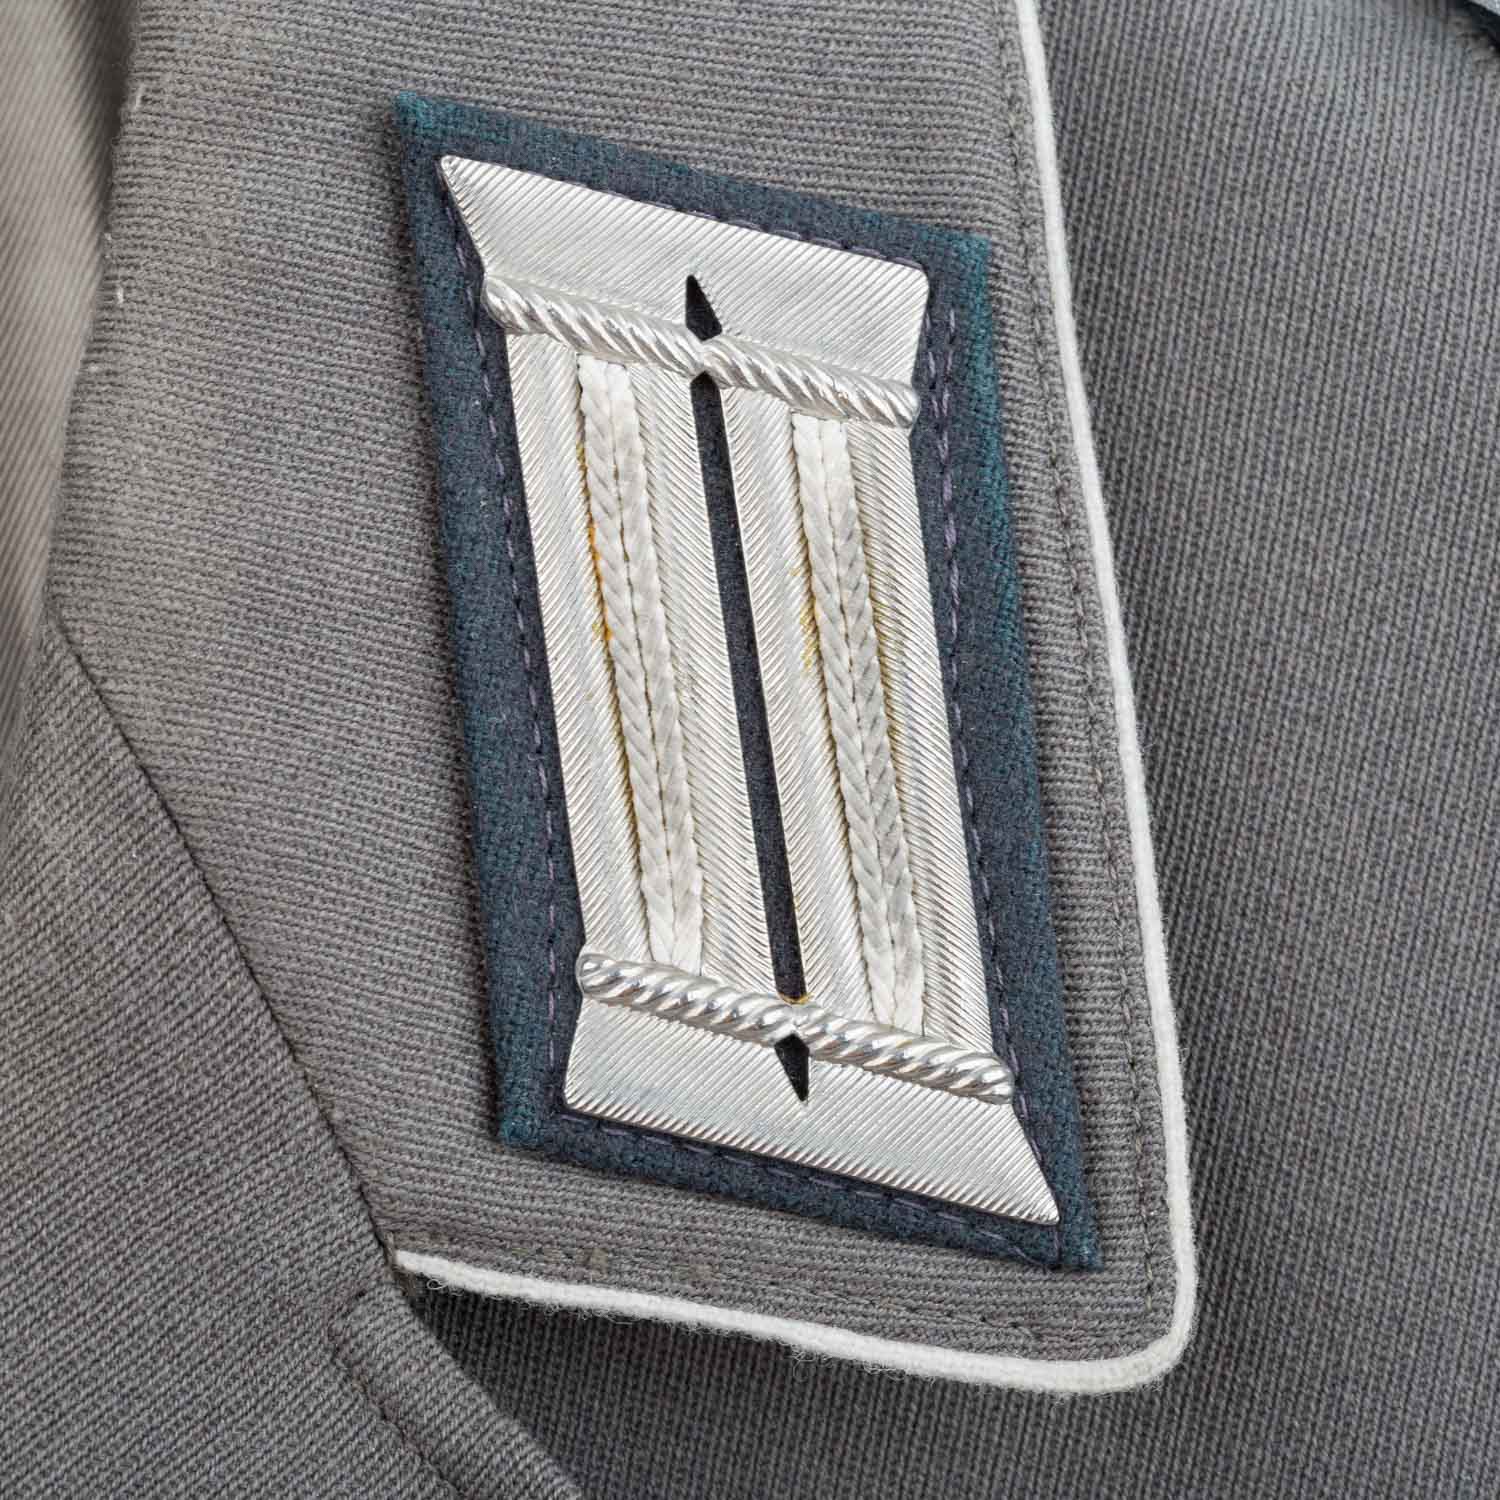 Uniformen - Dienstjacke der Nationalen Volksarmee - Image 4 of 7